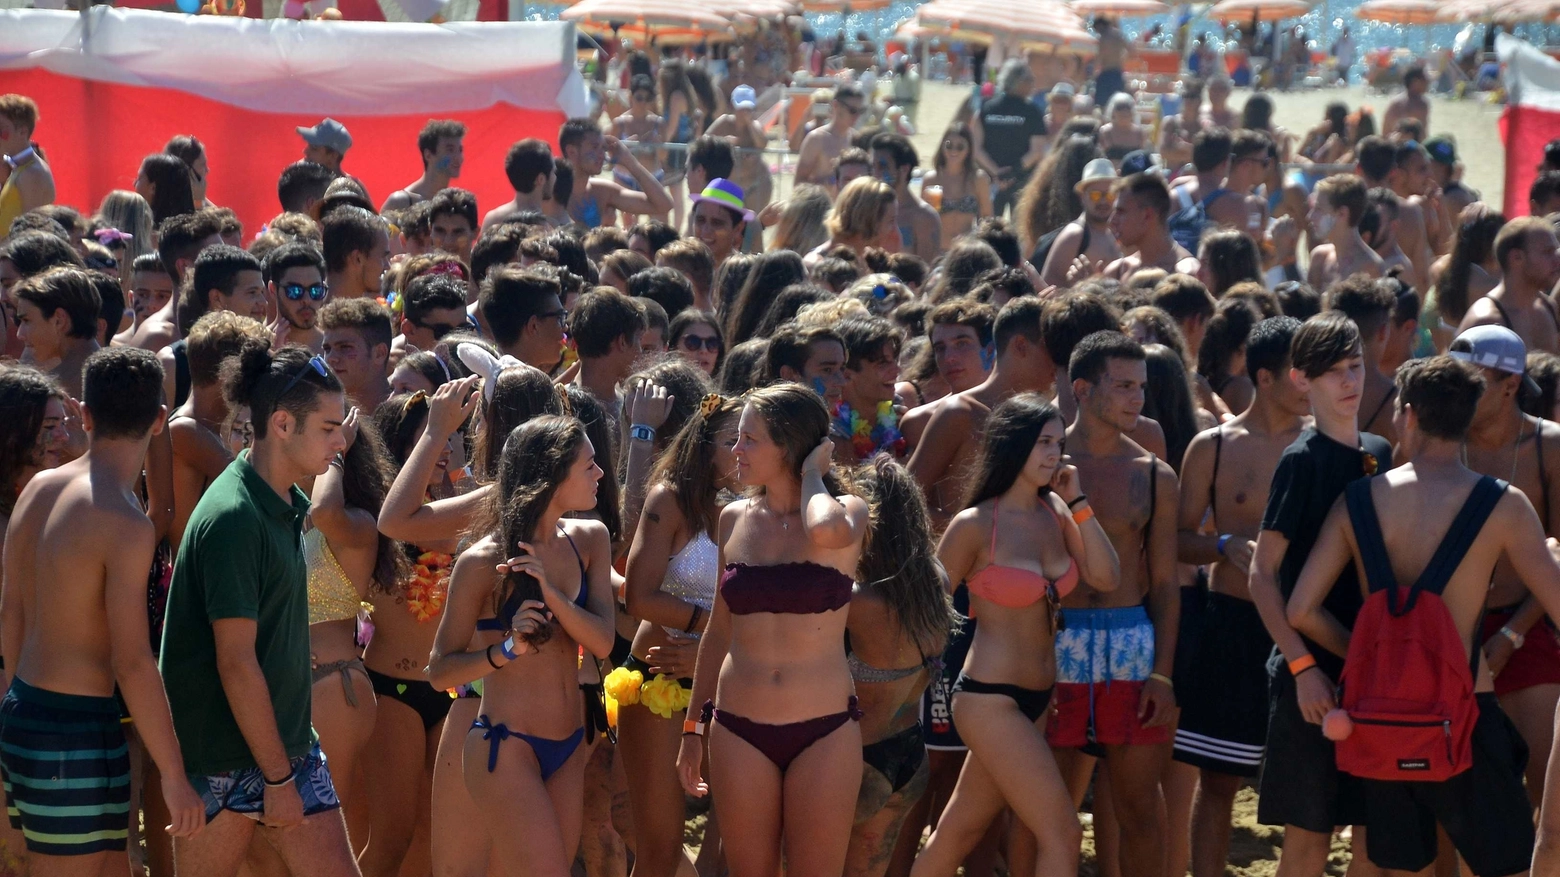 Giovani a una festa in spiaggia in una foto d'archivio Umicini